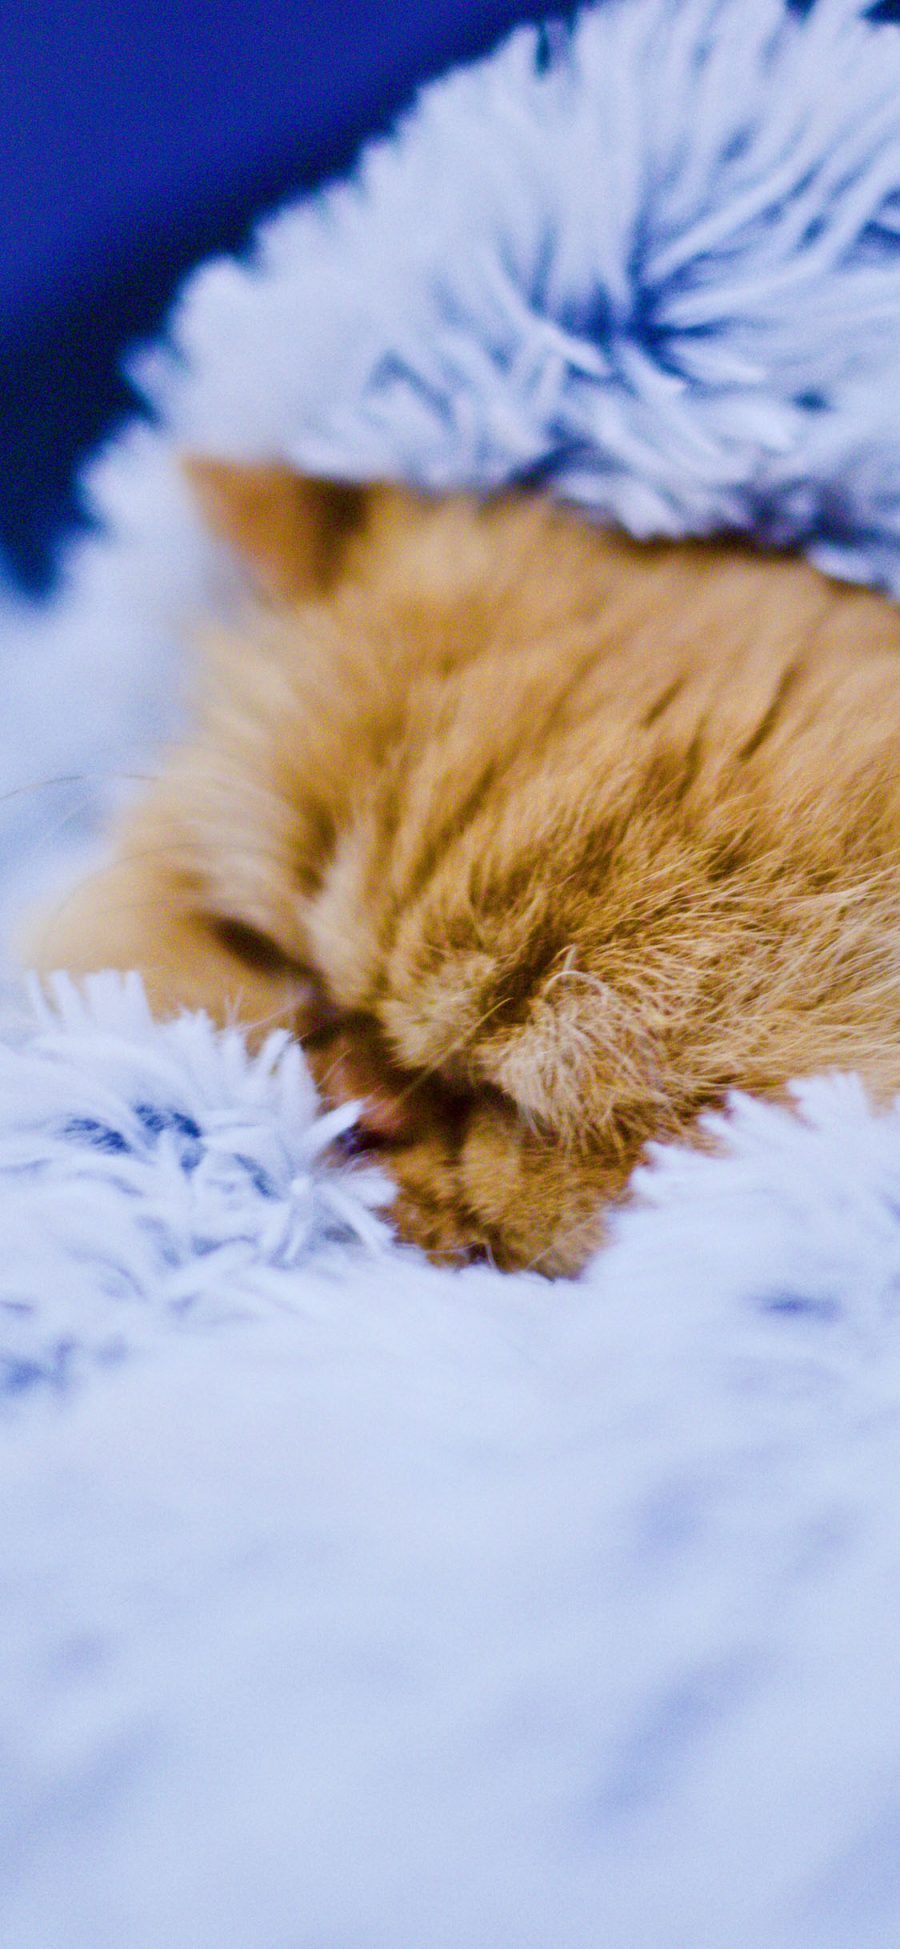 [2436×1125]宠物猫 橘猫 毛毯 睡觉 苹果手机壁纸图片